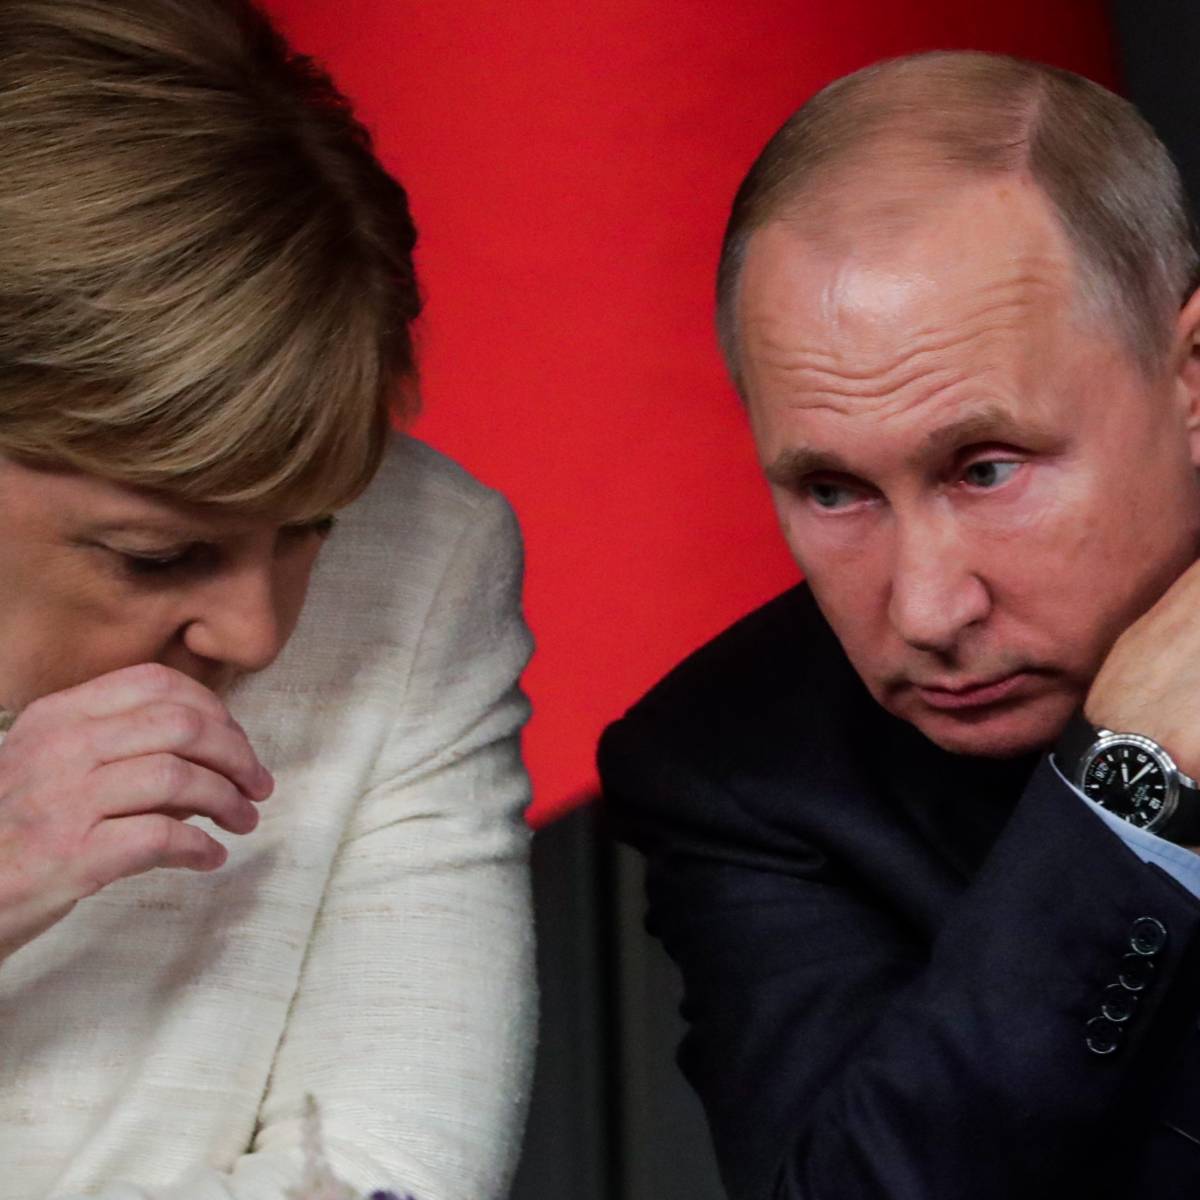 Меркель назвала условие снятия санкций с России